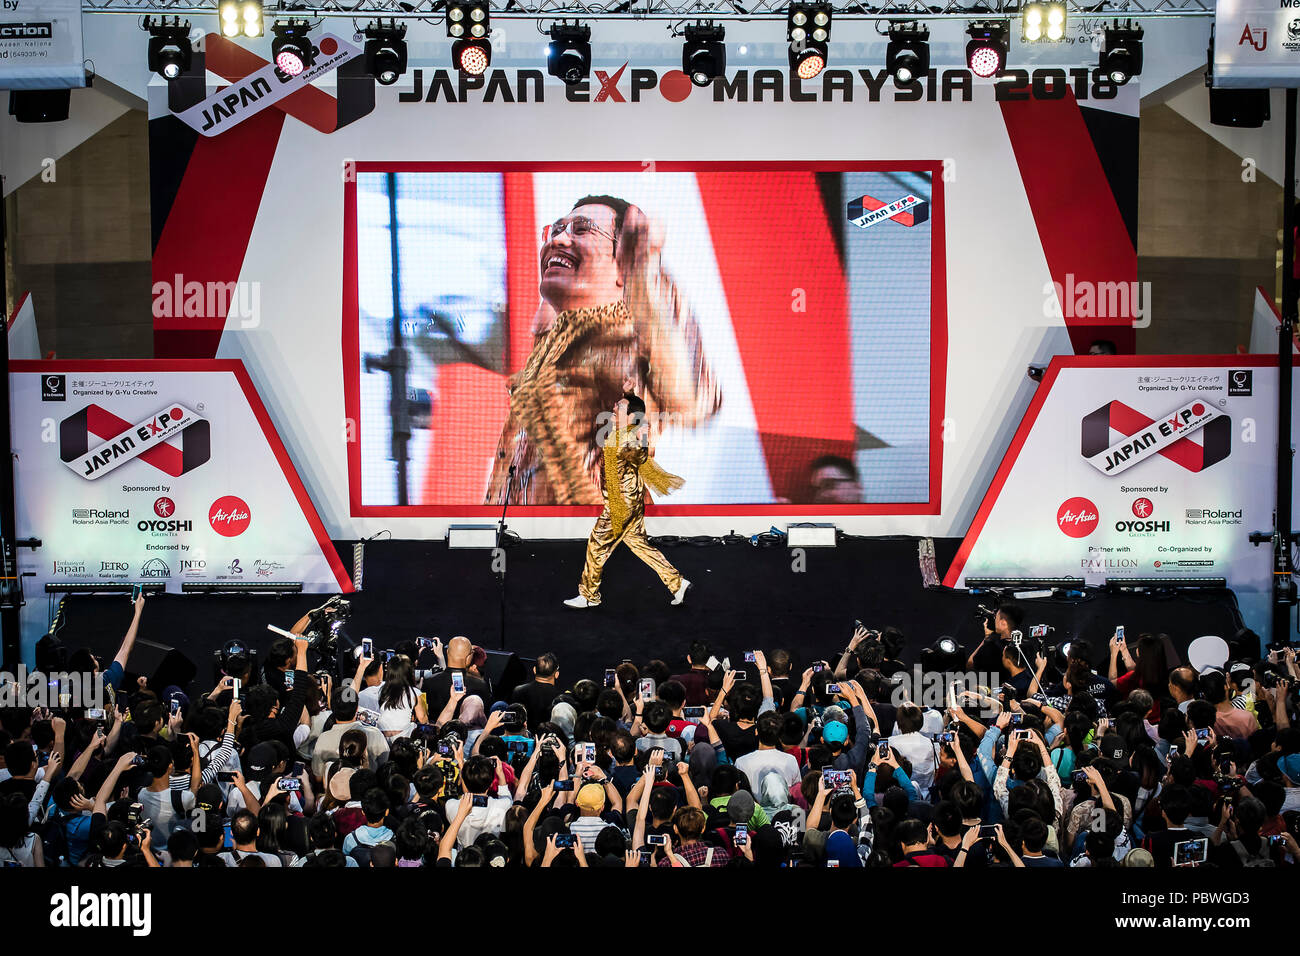 Kuala Lumpur, Malaisie. 29 juillet, 2018. Piko Taro concert à Japan Expo Malaisie à Kuala Lumpur, Malaisie, le 29 juillet 2018. Piko japonais Taro divertit ses fans. © Danny Chan/Alamy Live News. Banque D'Images